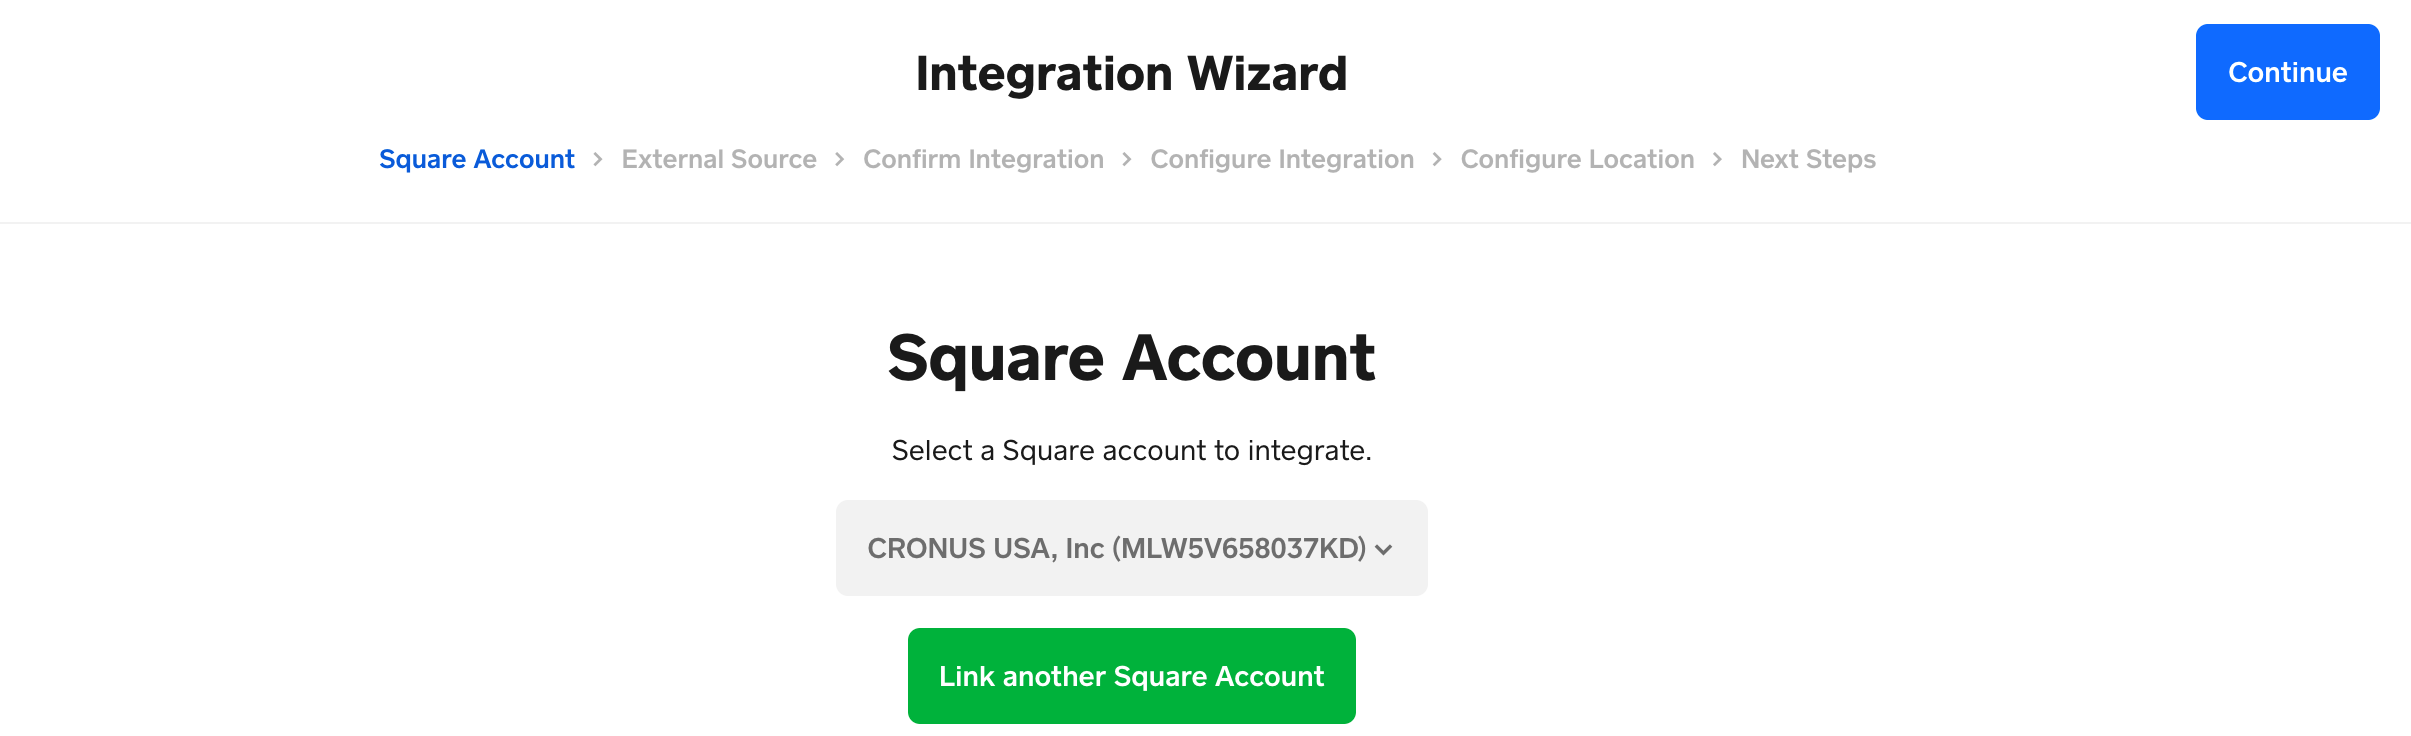 square-bridge-wizard-square-account-added